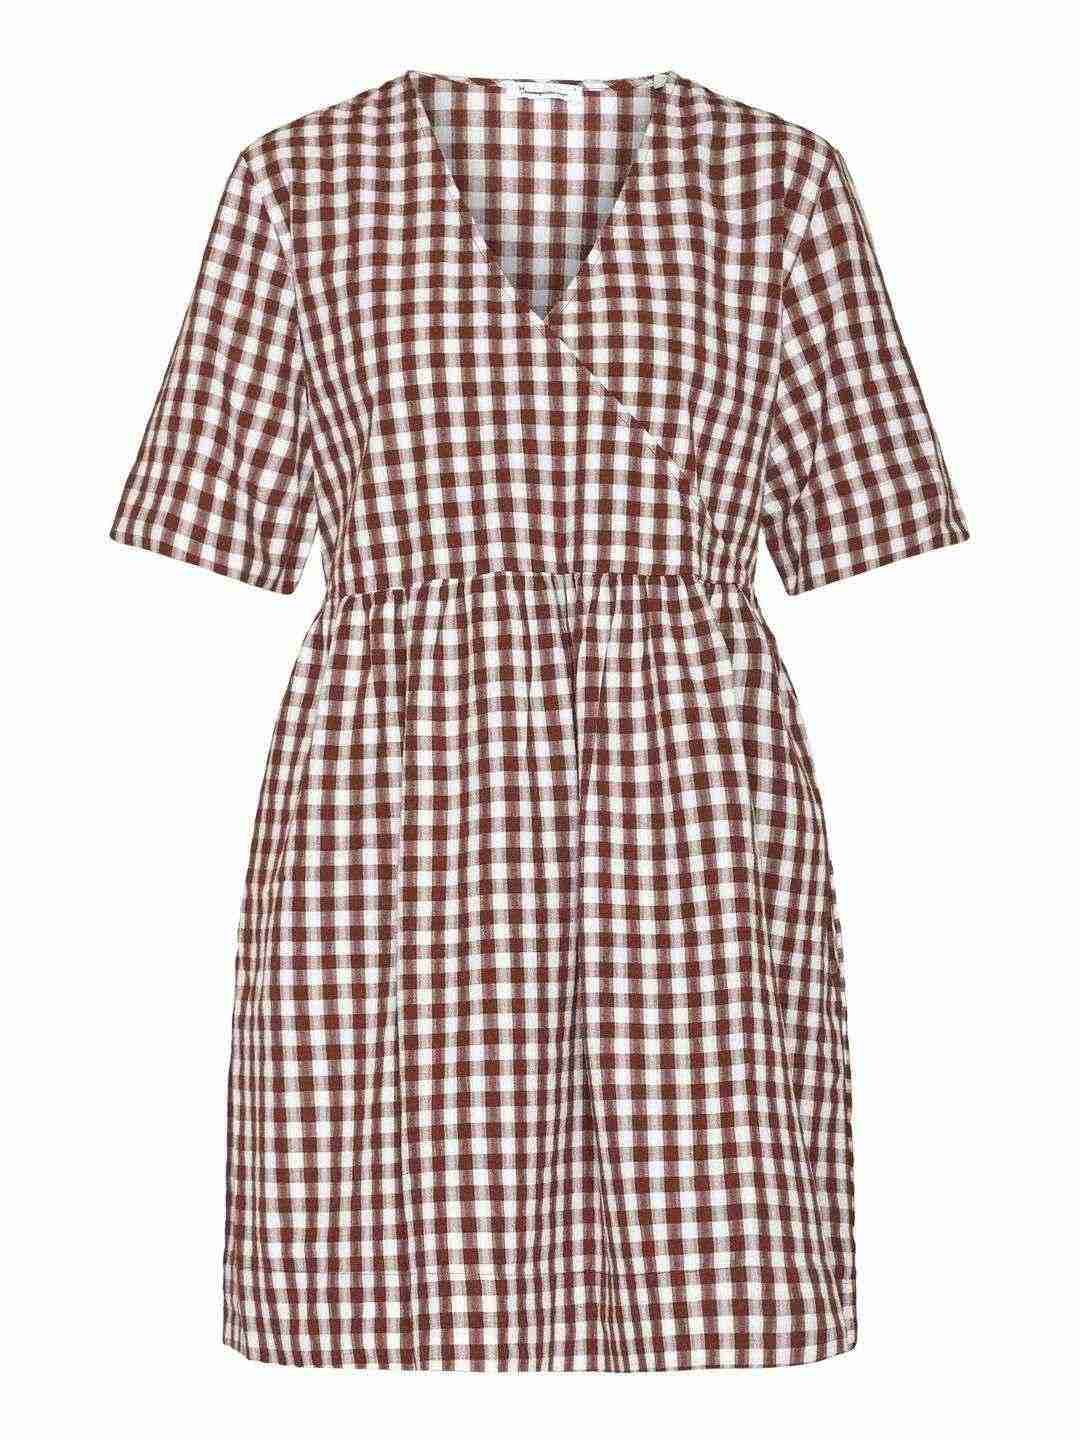 Kleid Cross Over A-Shape Seersucker Checkered brown check von KnowledgeCotton Apparel